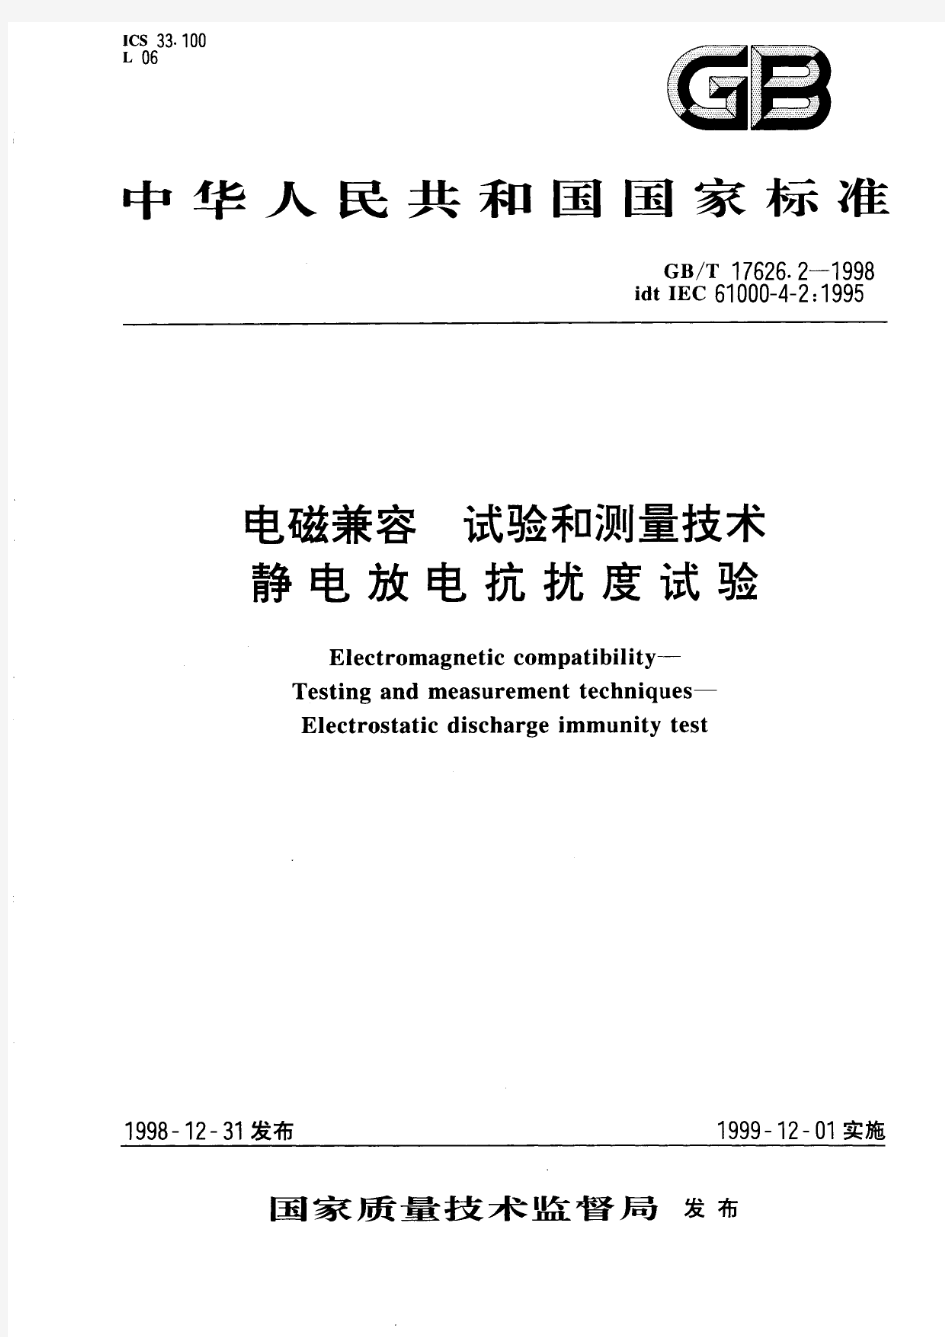 电磁兼容 试验和测量技术 静电放电抗扰度试验(标准状态：被代替)